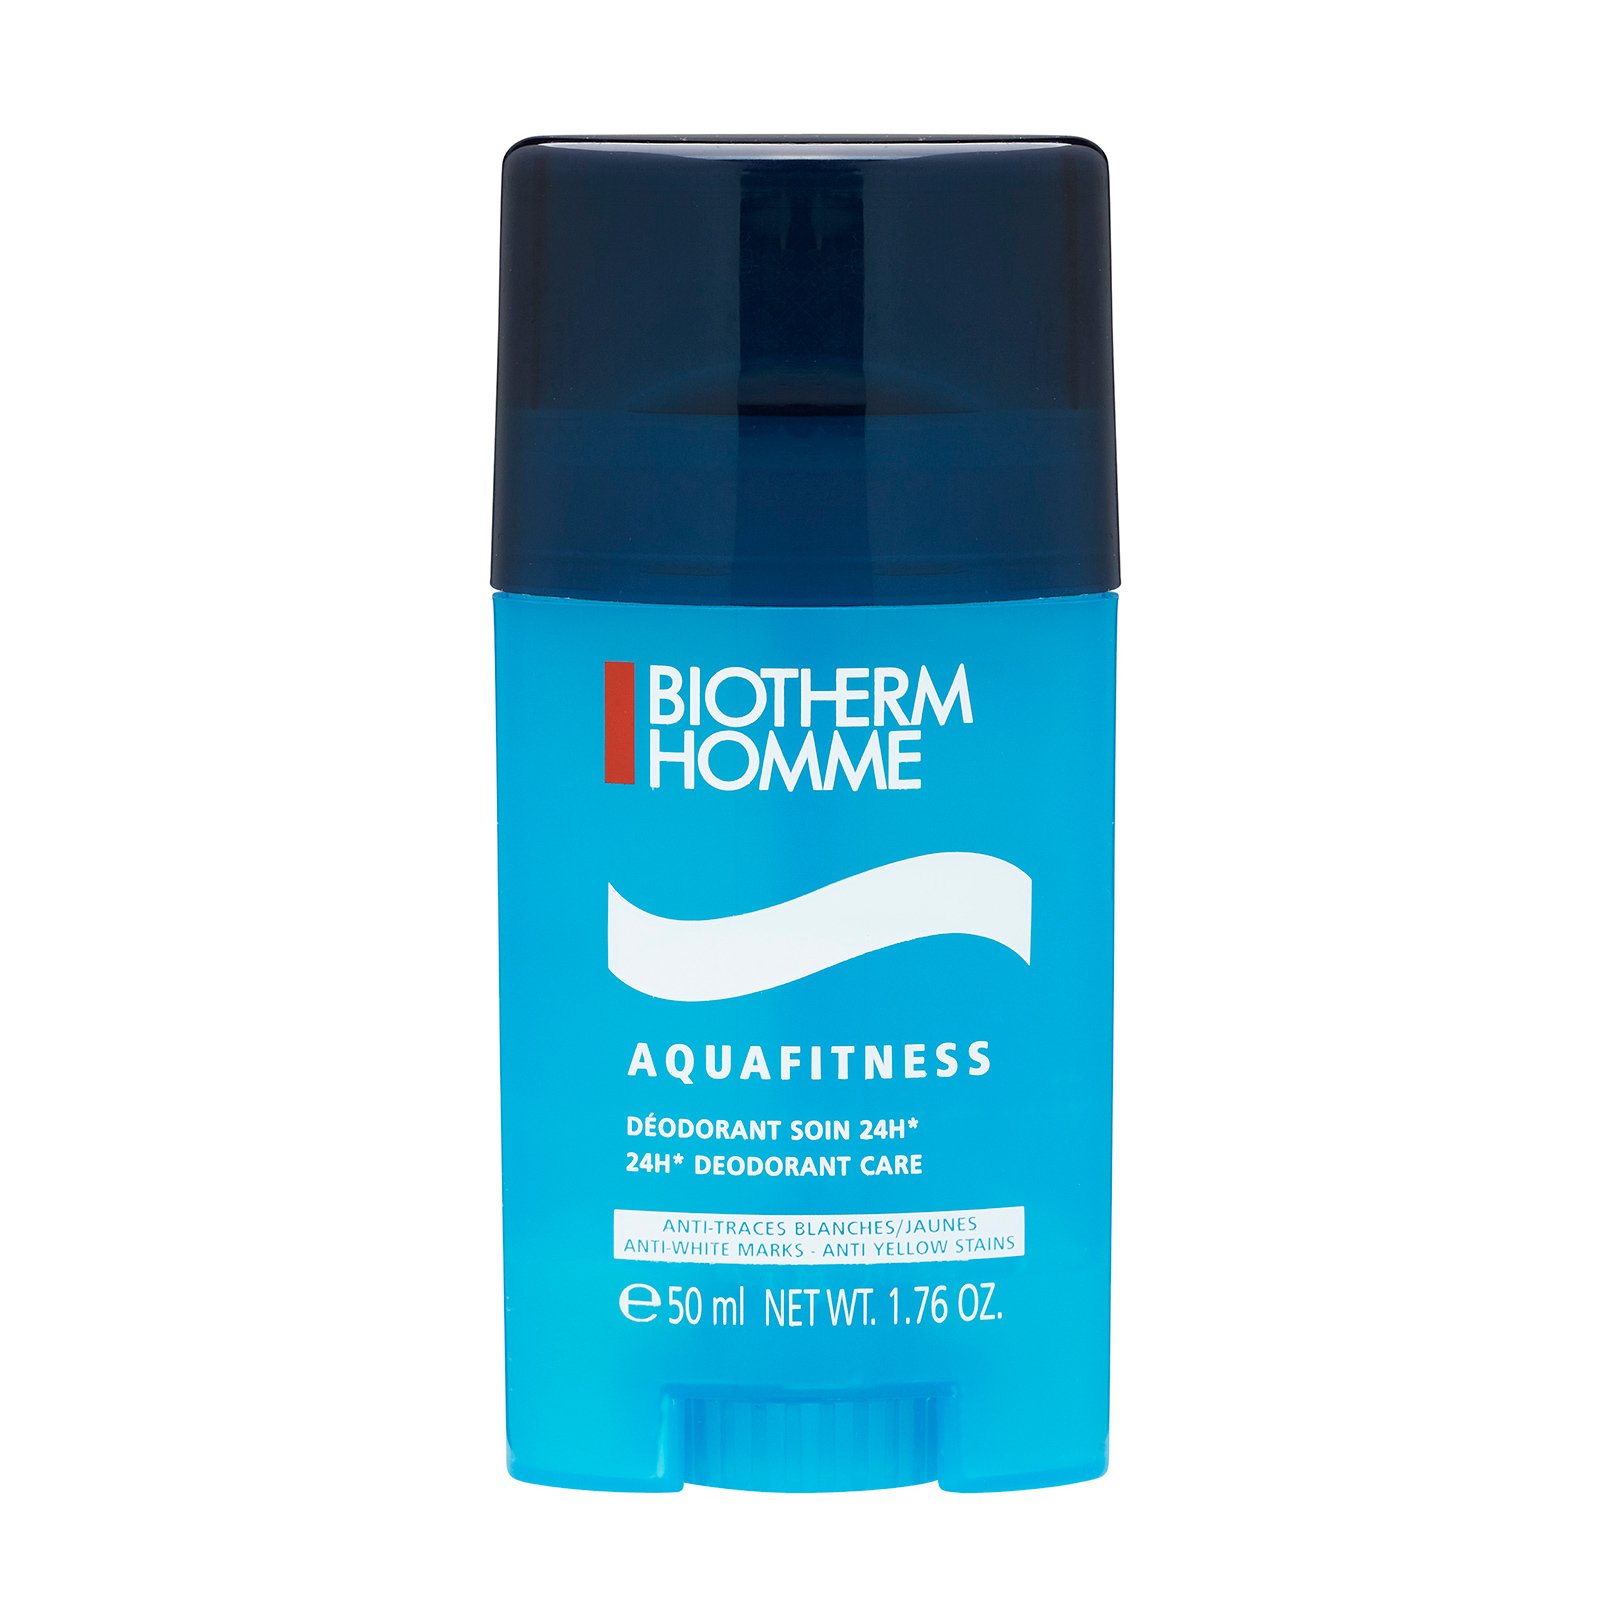 Homme Aquafitness 24H* Deodorant Care